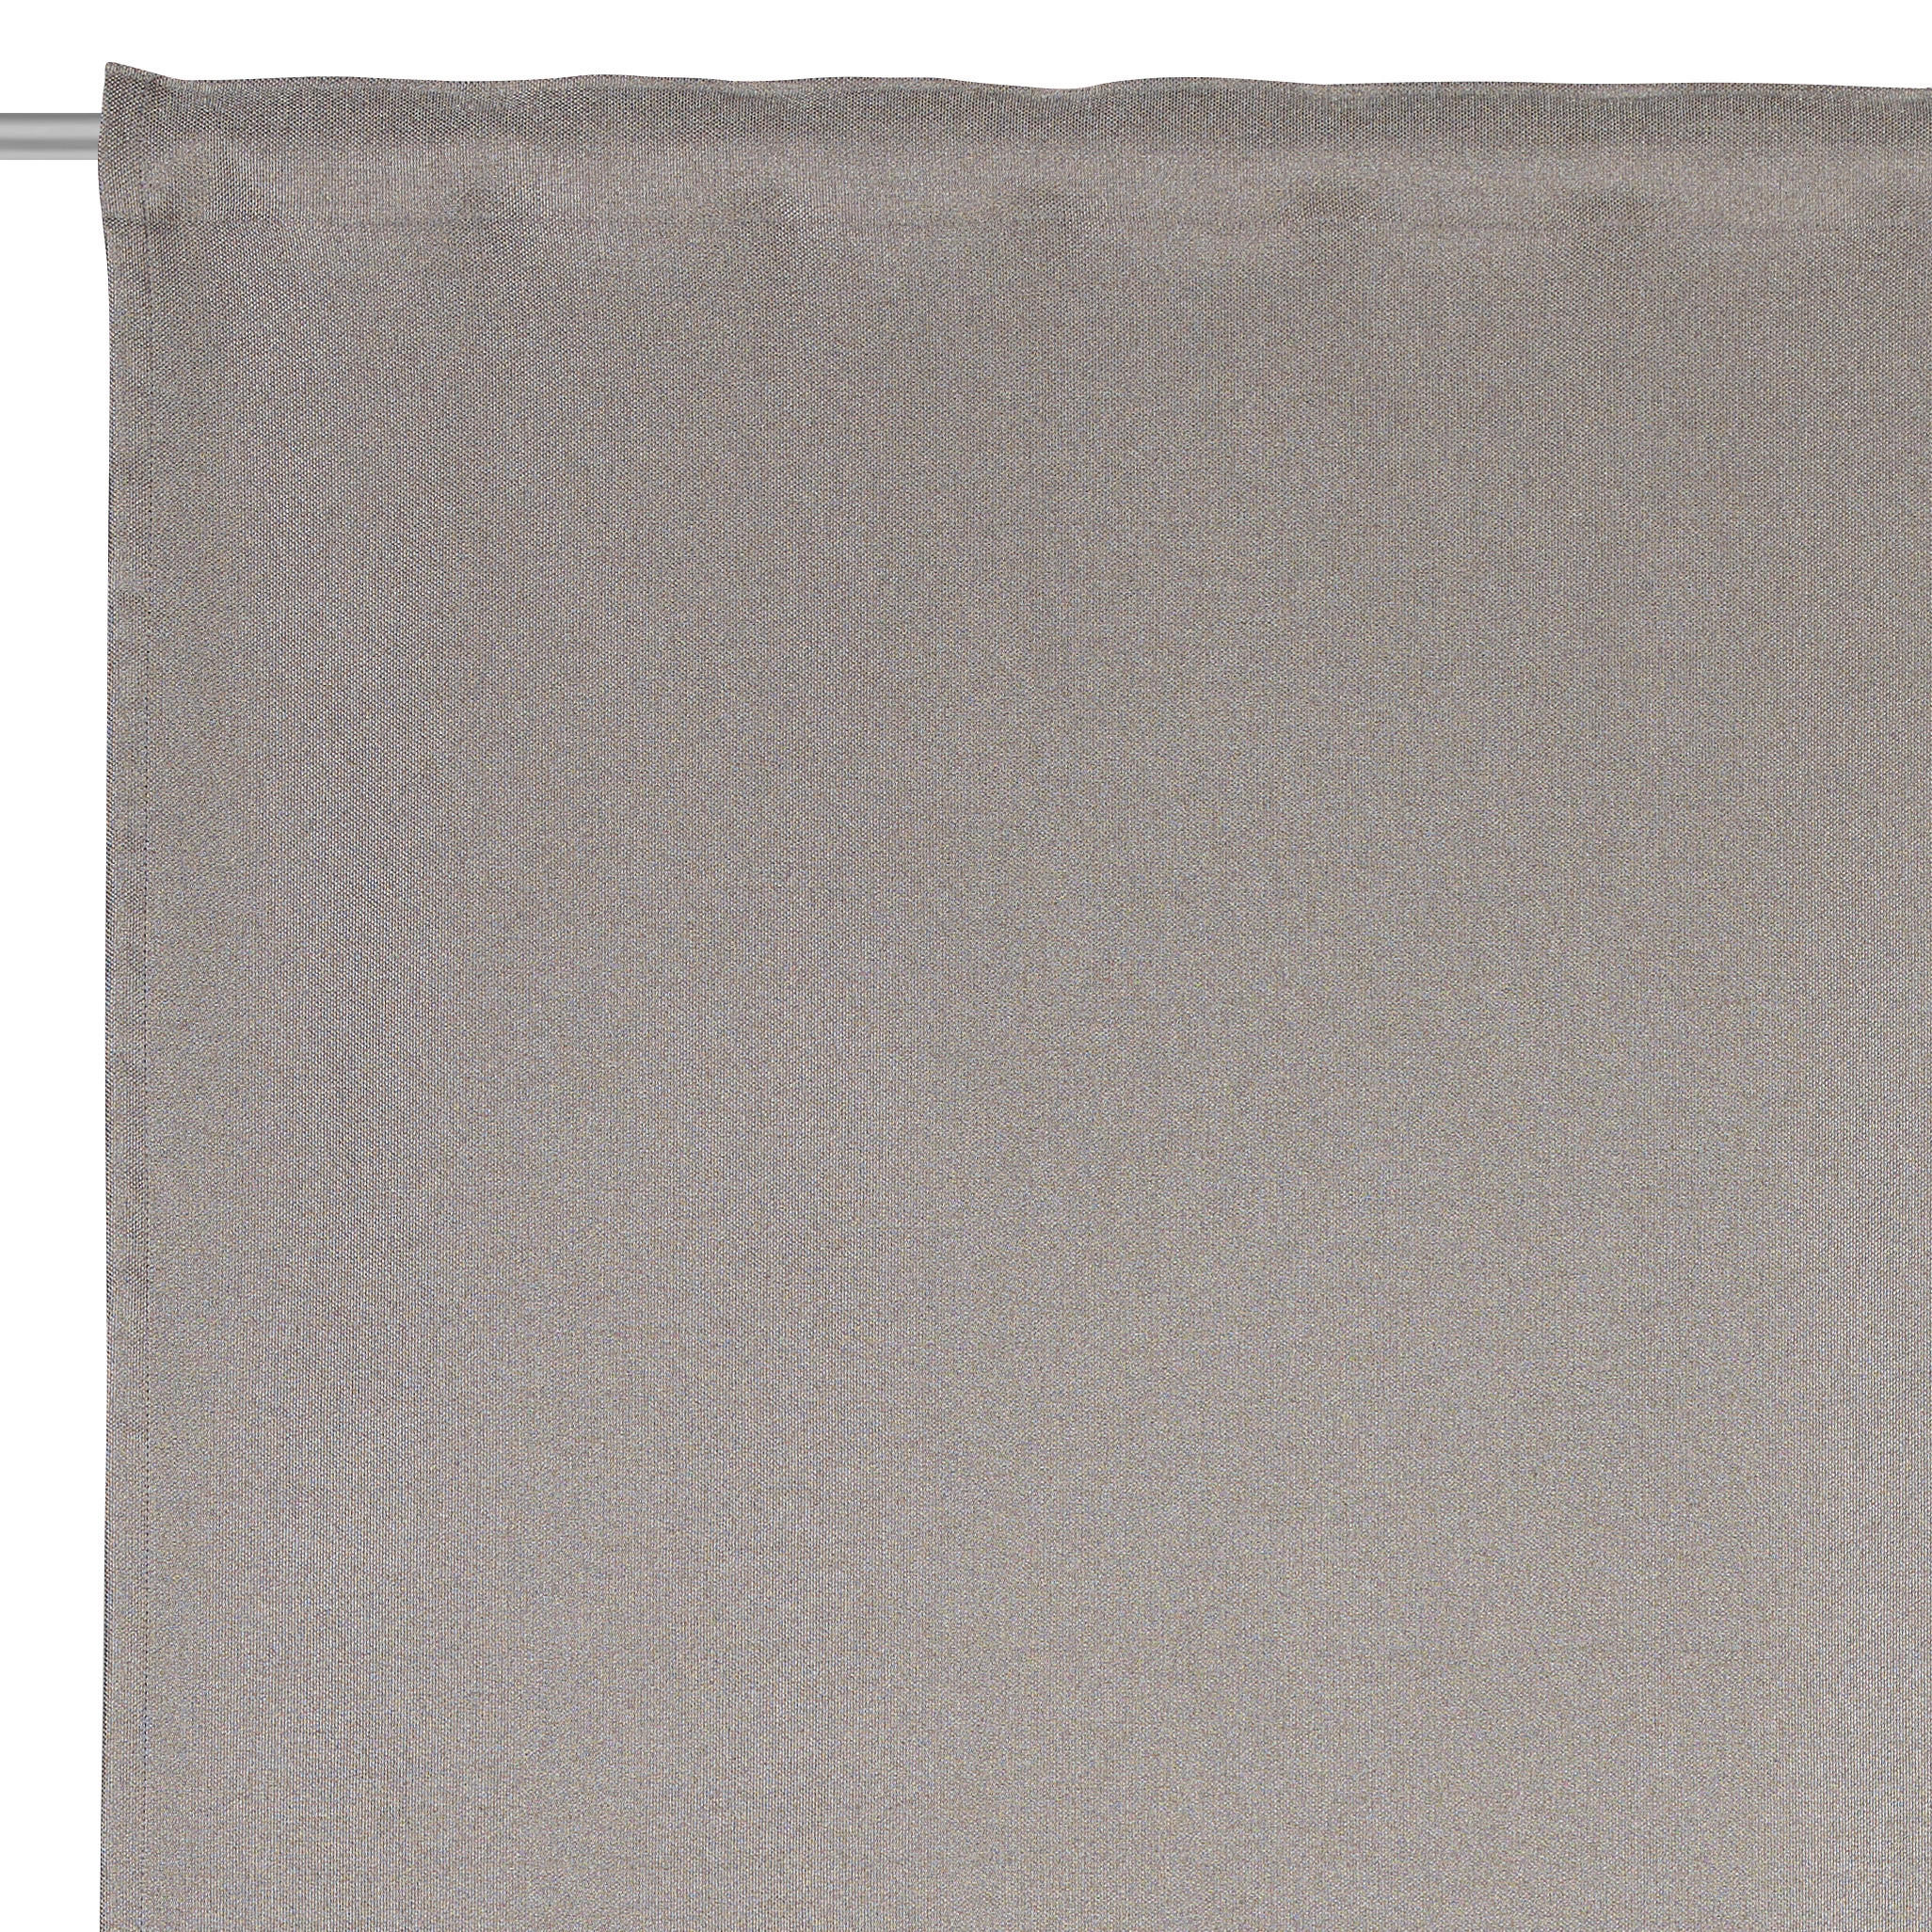 FERTIGVORHANG CAVA black-out (lichtundurchlässig) 140/245 cm   - Taupe, KONVENTIONELL, Textil (140/245cm) - Dieter Knoll